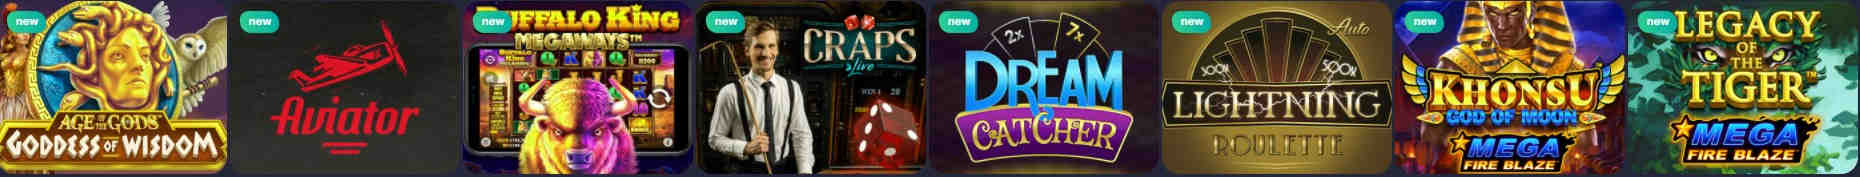 bettilt online casino games